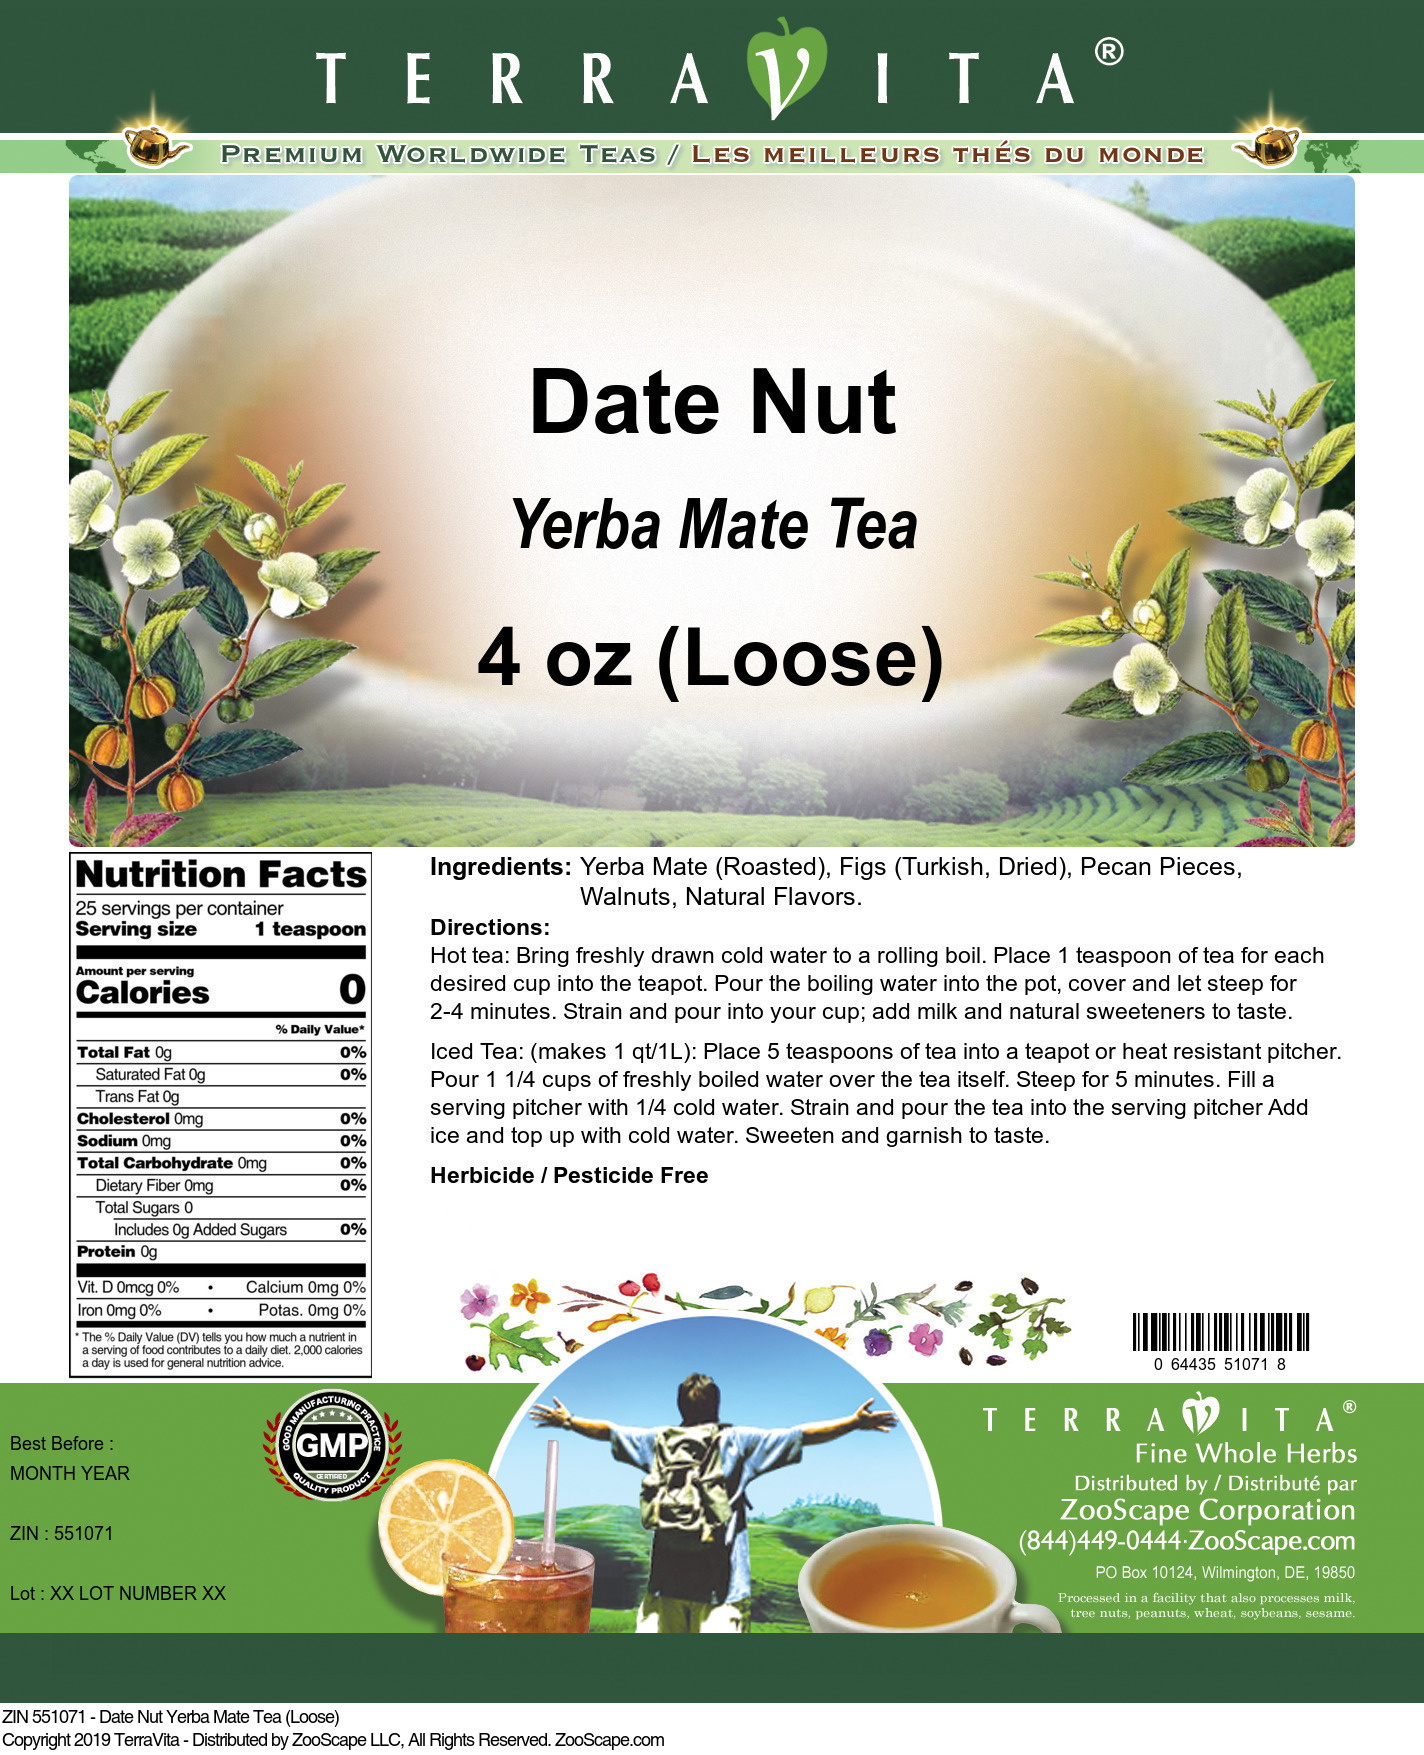 Date Nut Yerba Mate Tea (Loose) - Label